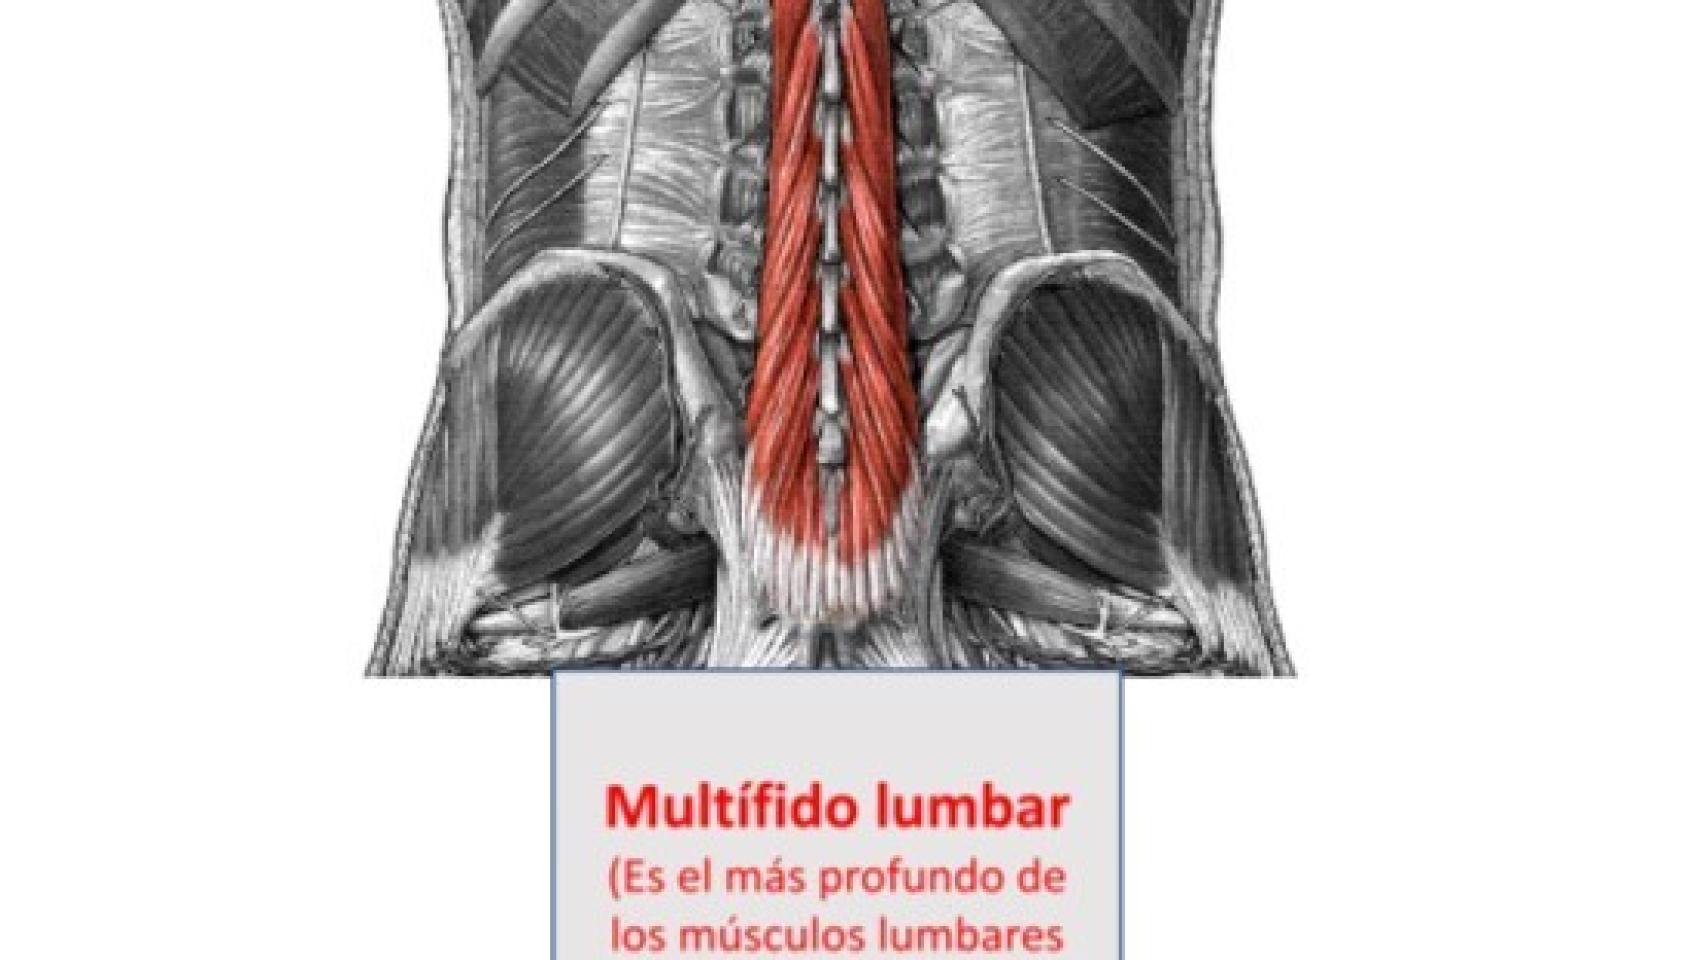 El multifido lumbar, señalado en la espalda.